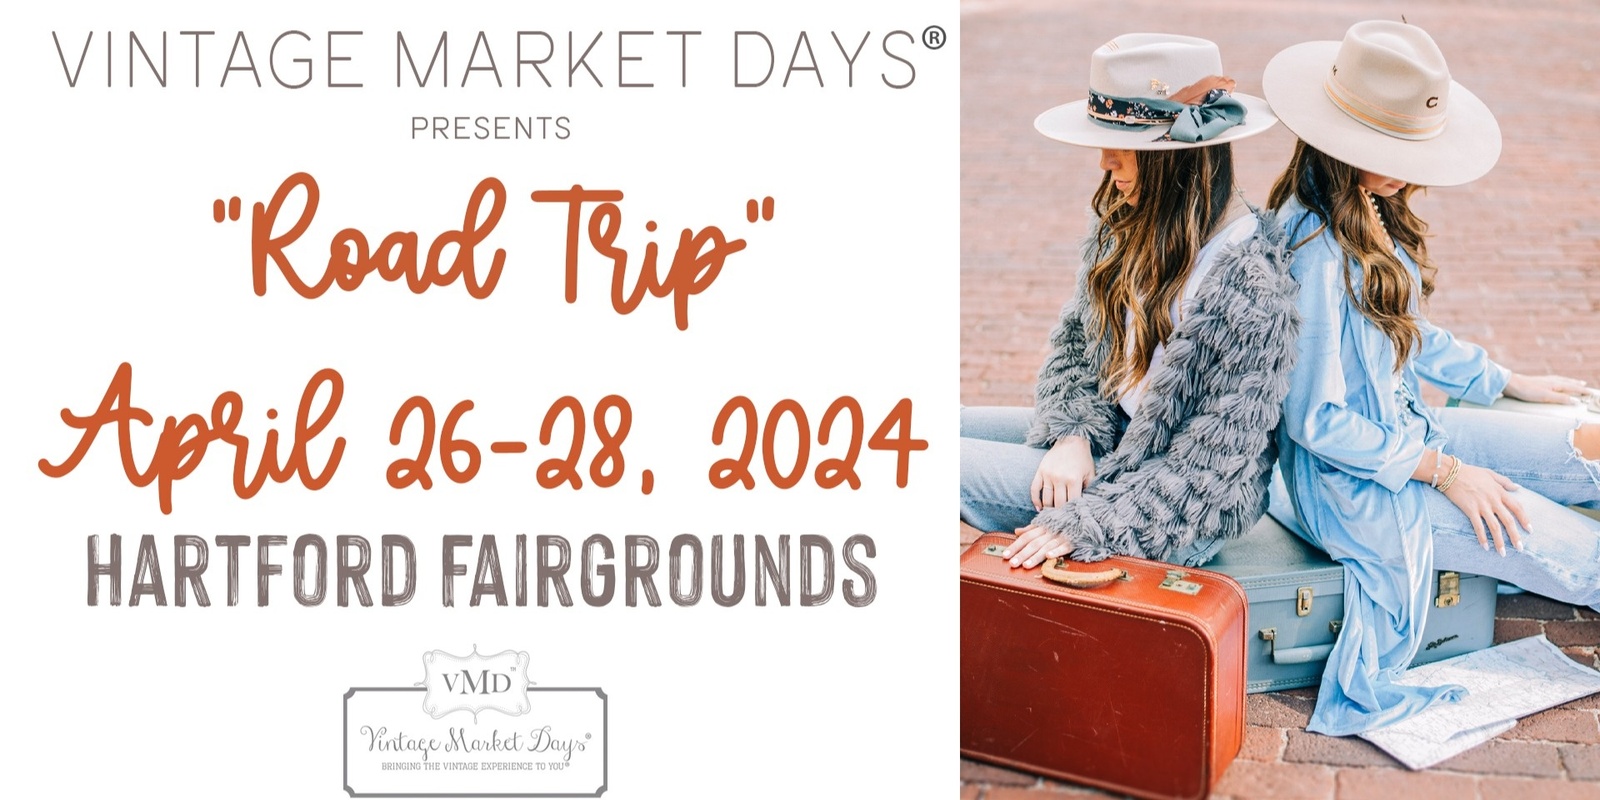 Vintage Market Days @ Hartford Fairgrounds